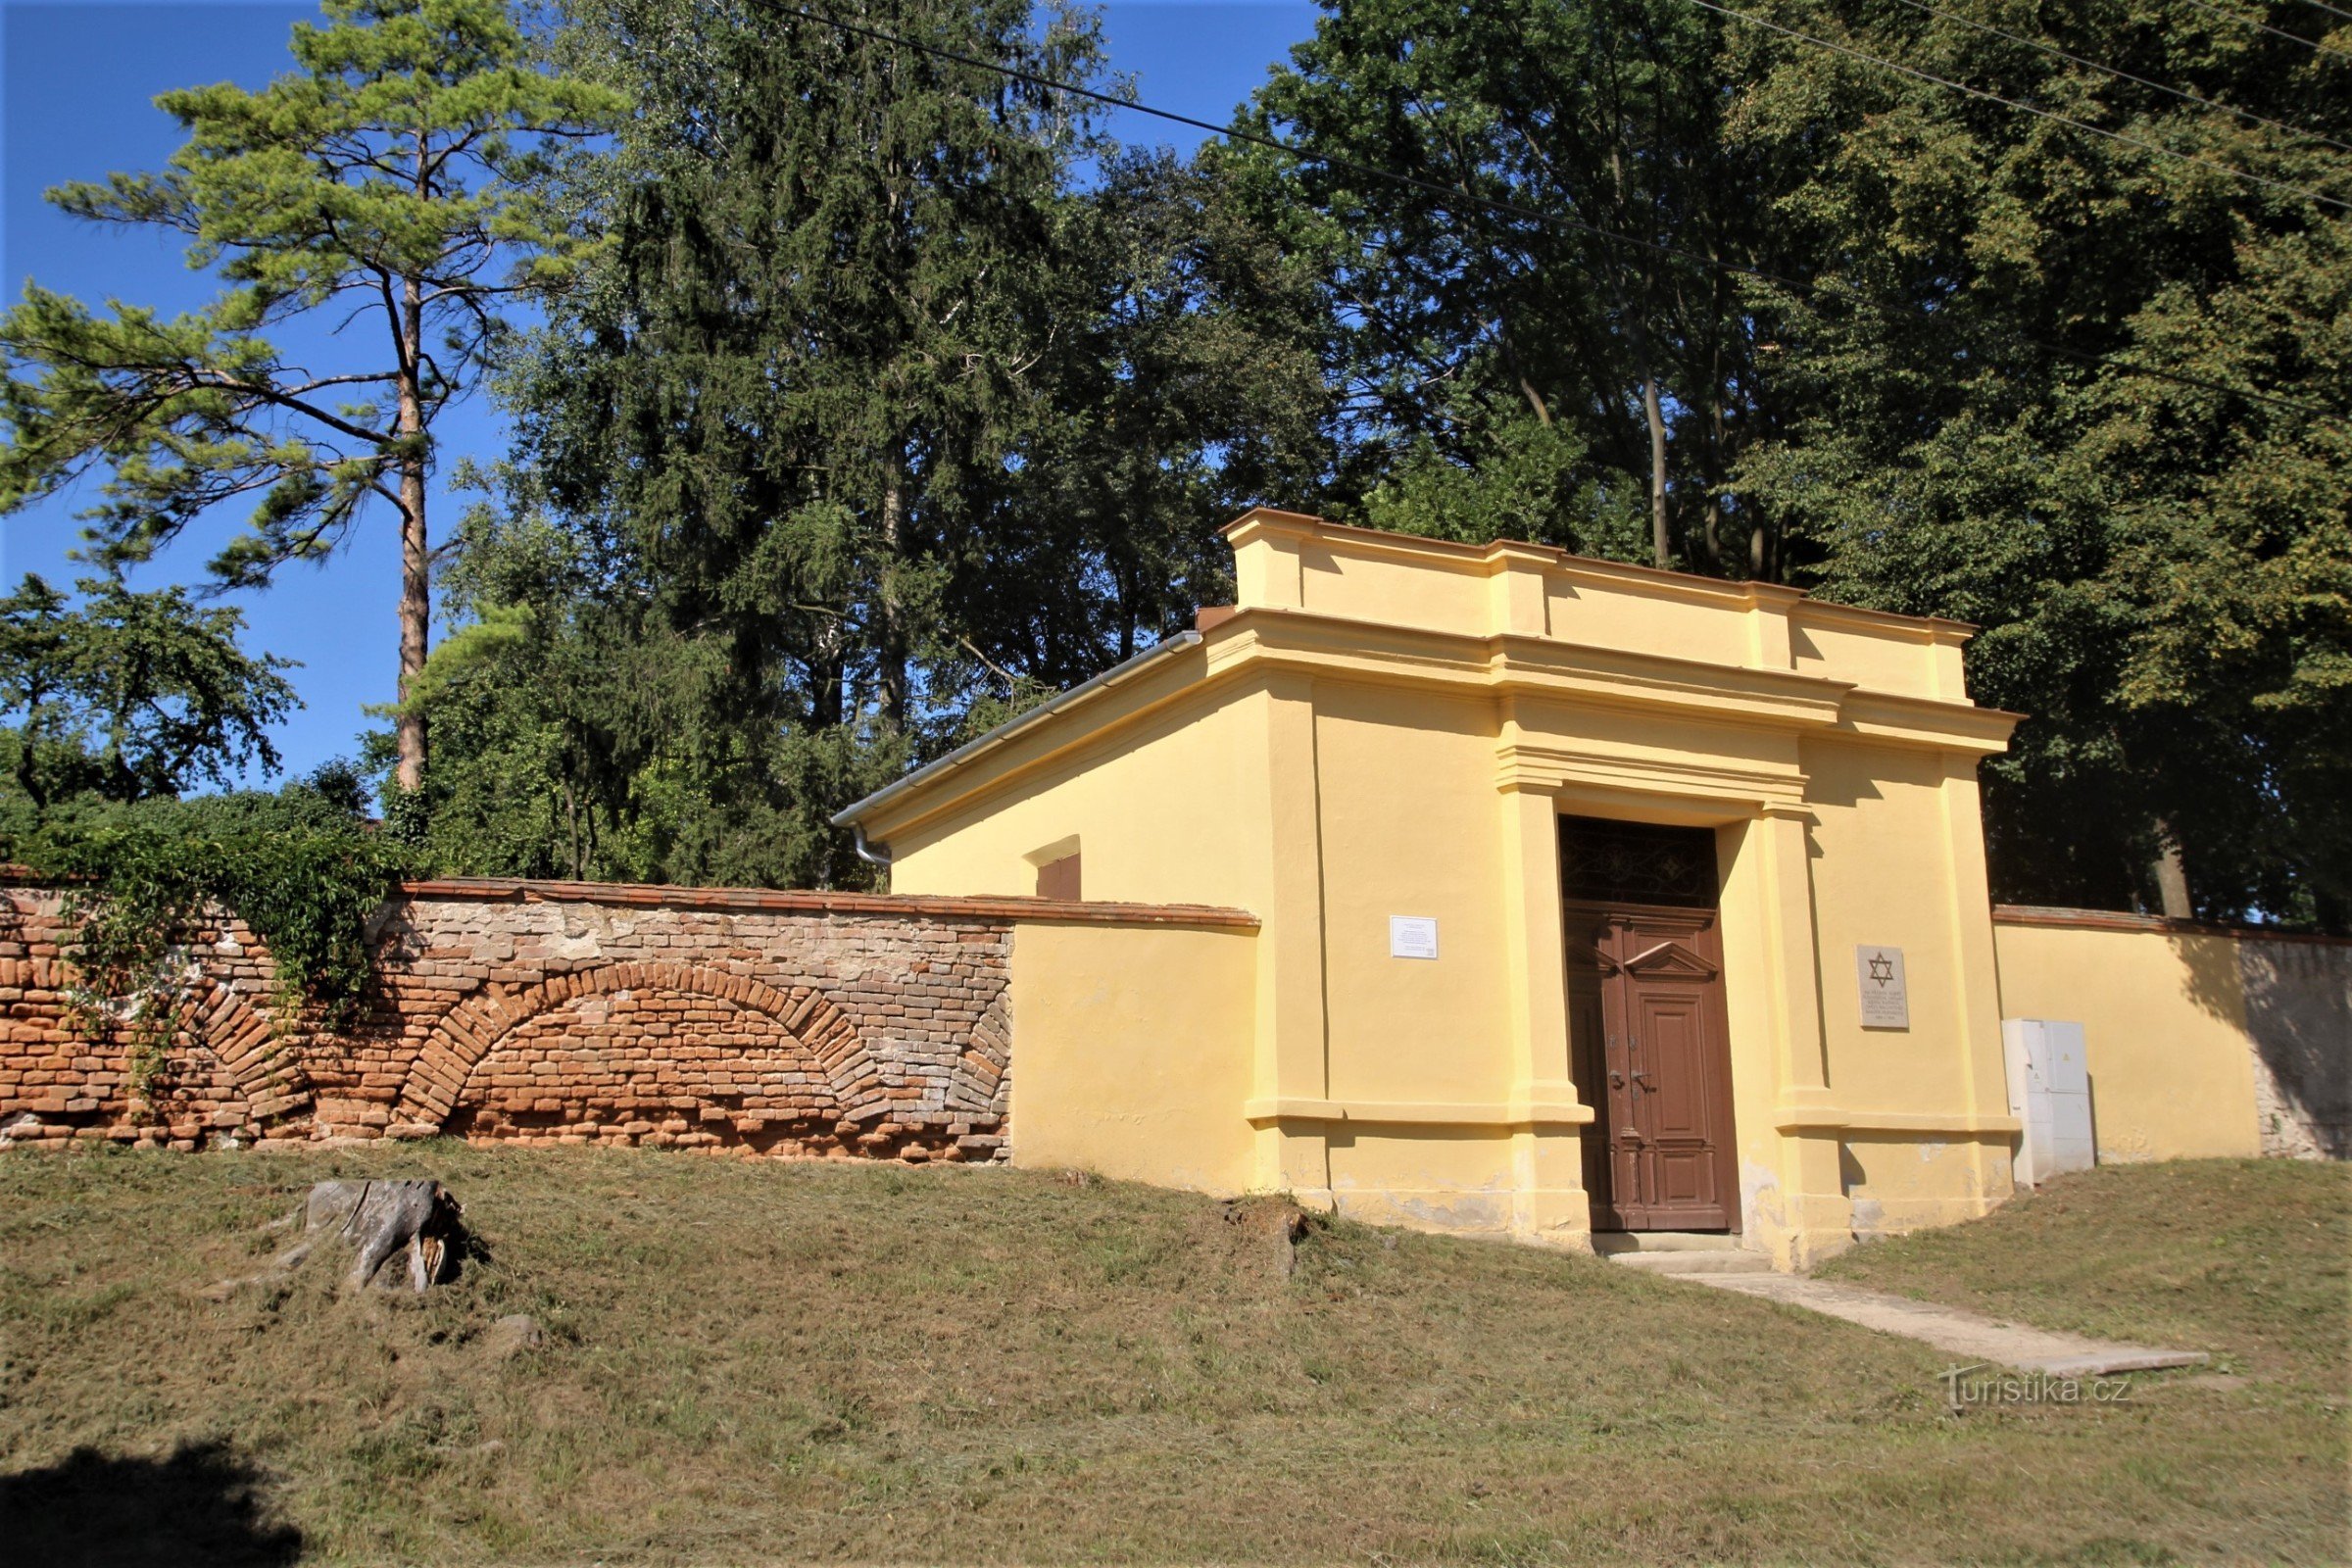 Bučovice - Joodse begraafplaats